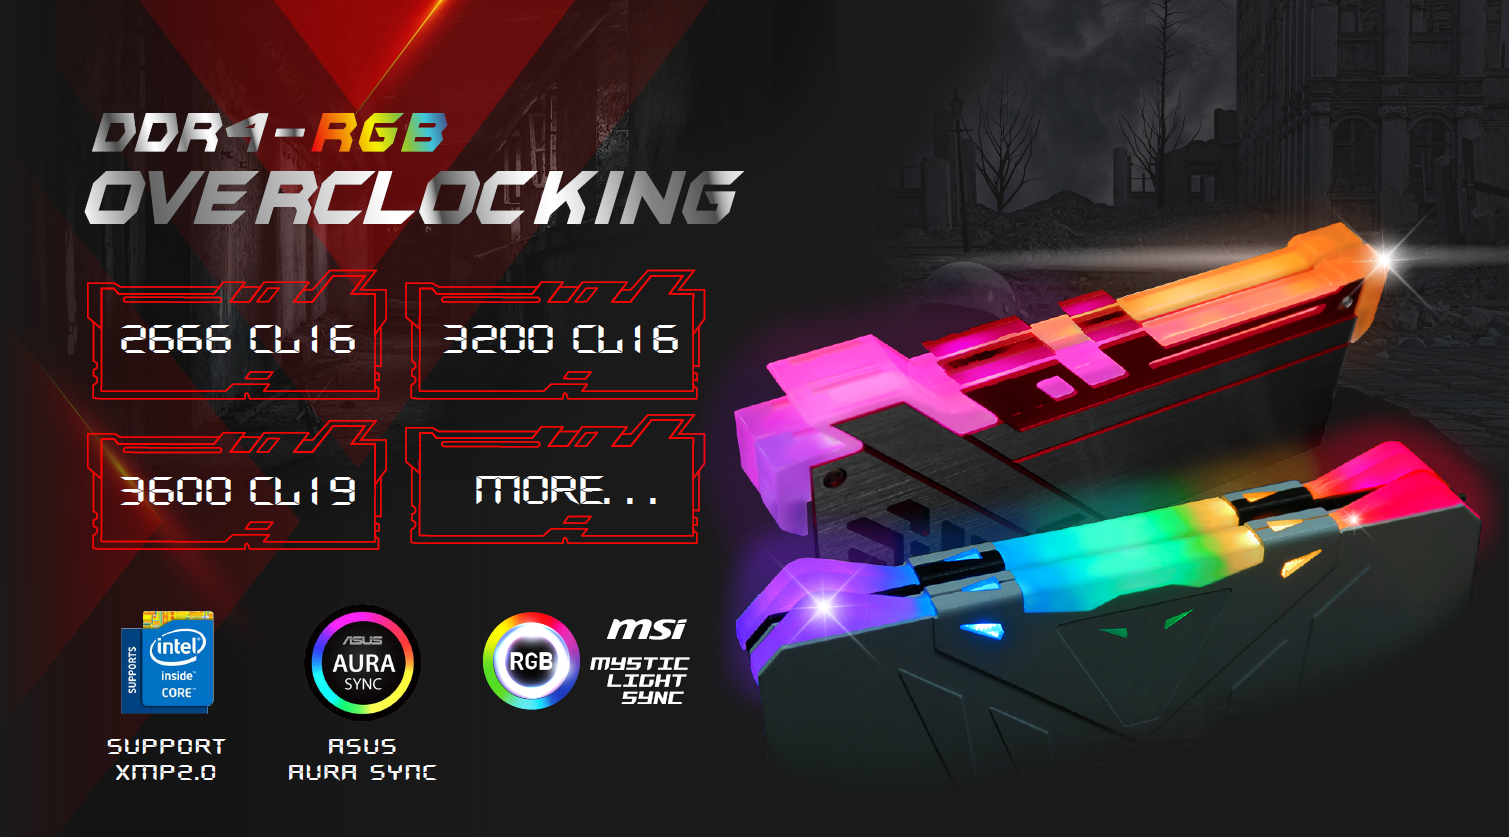 DDR4-RGB Overclocking